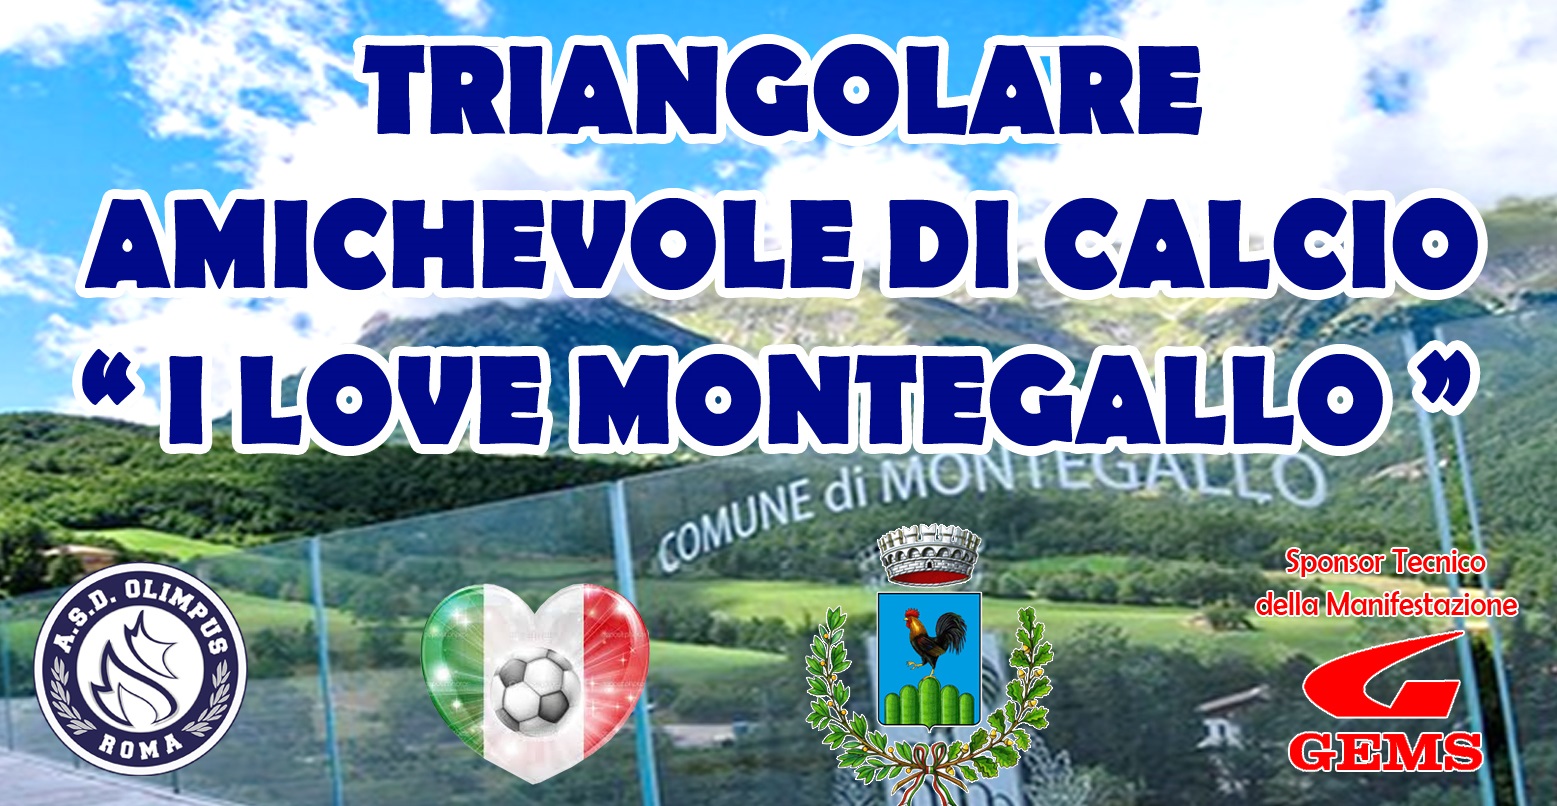 Triangolare “I Love Montegallo”. Una speranza dopo il sisma del 24 agosto